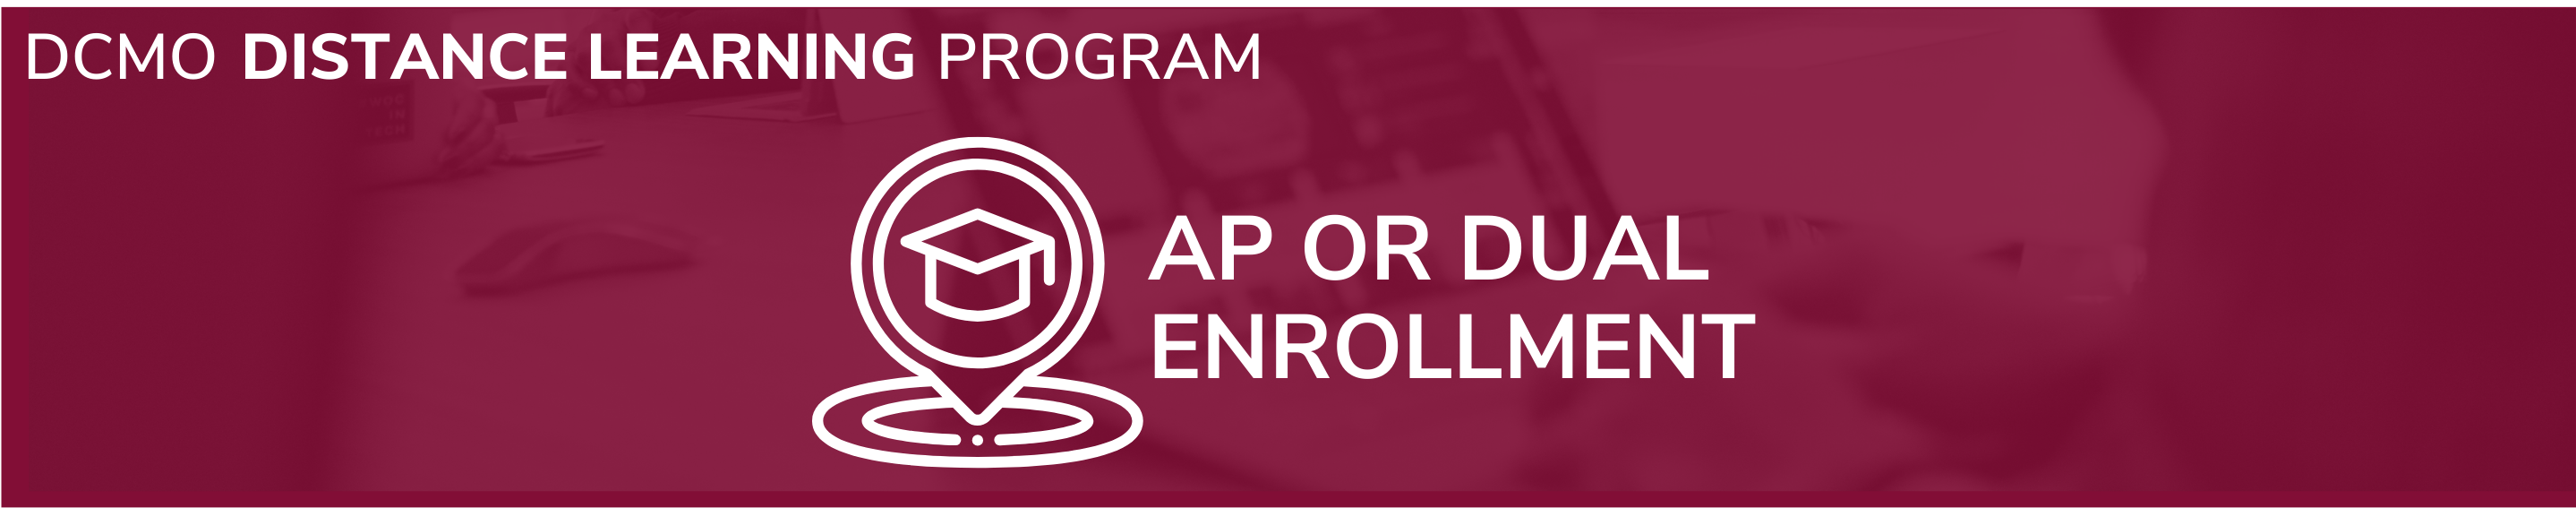 AP or Dual Enrollment Header